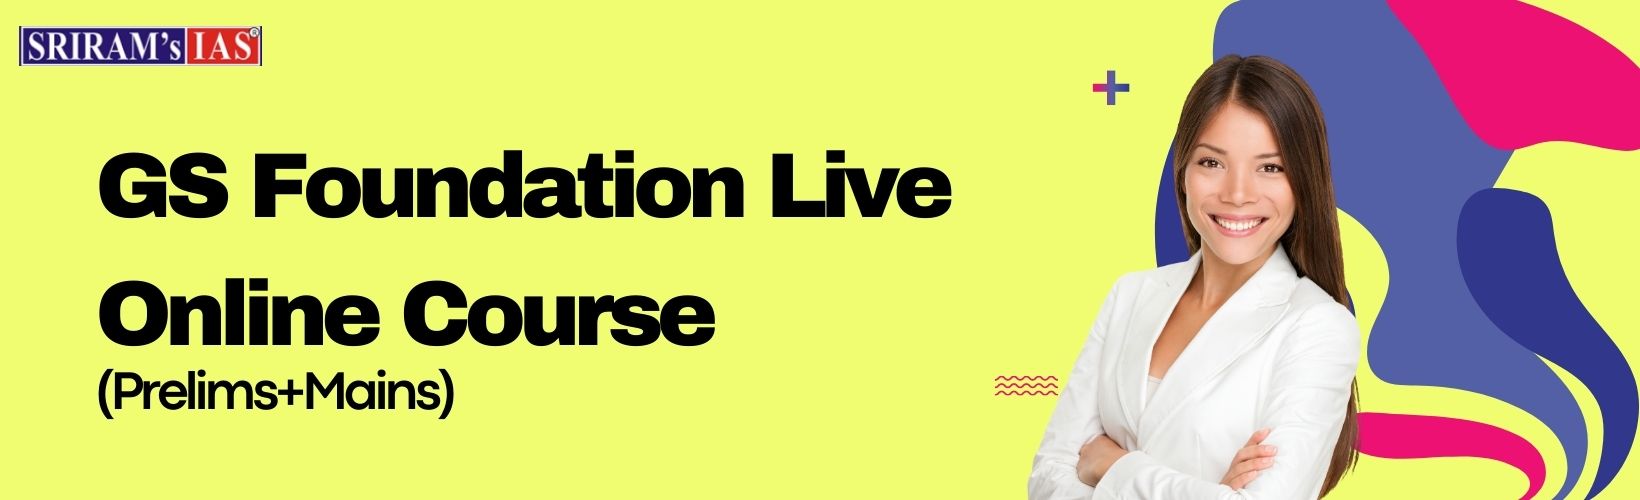 online live gs course